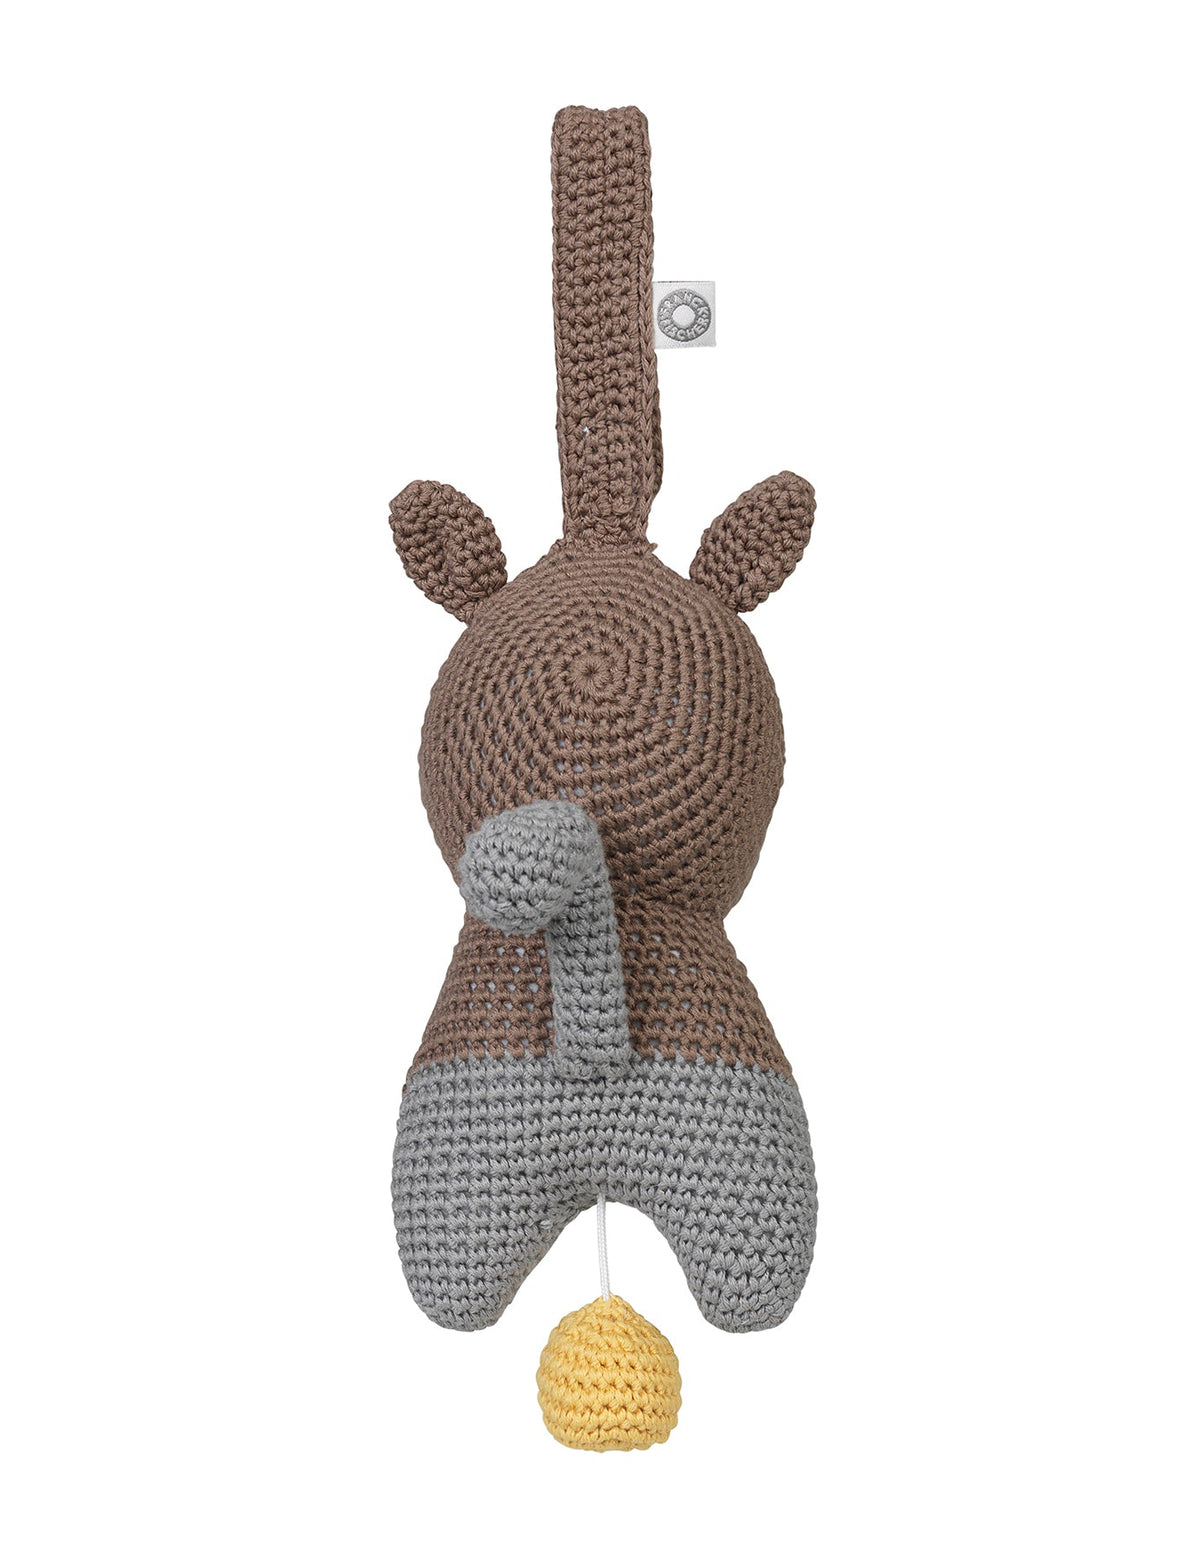 Hella Brown Squirrel Musical Toy by Franck & Fischer - Maude Kids Decor